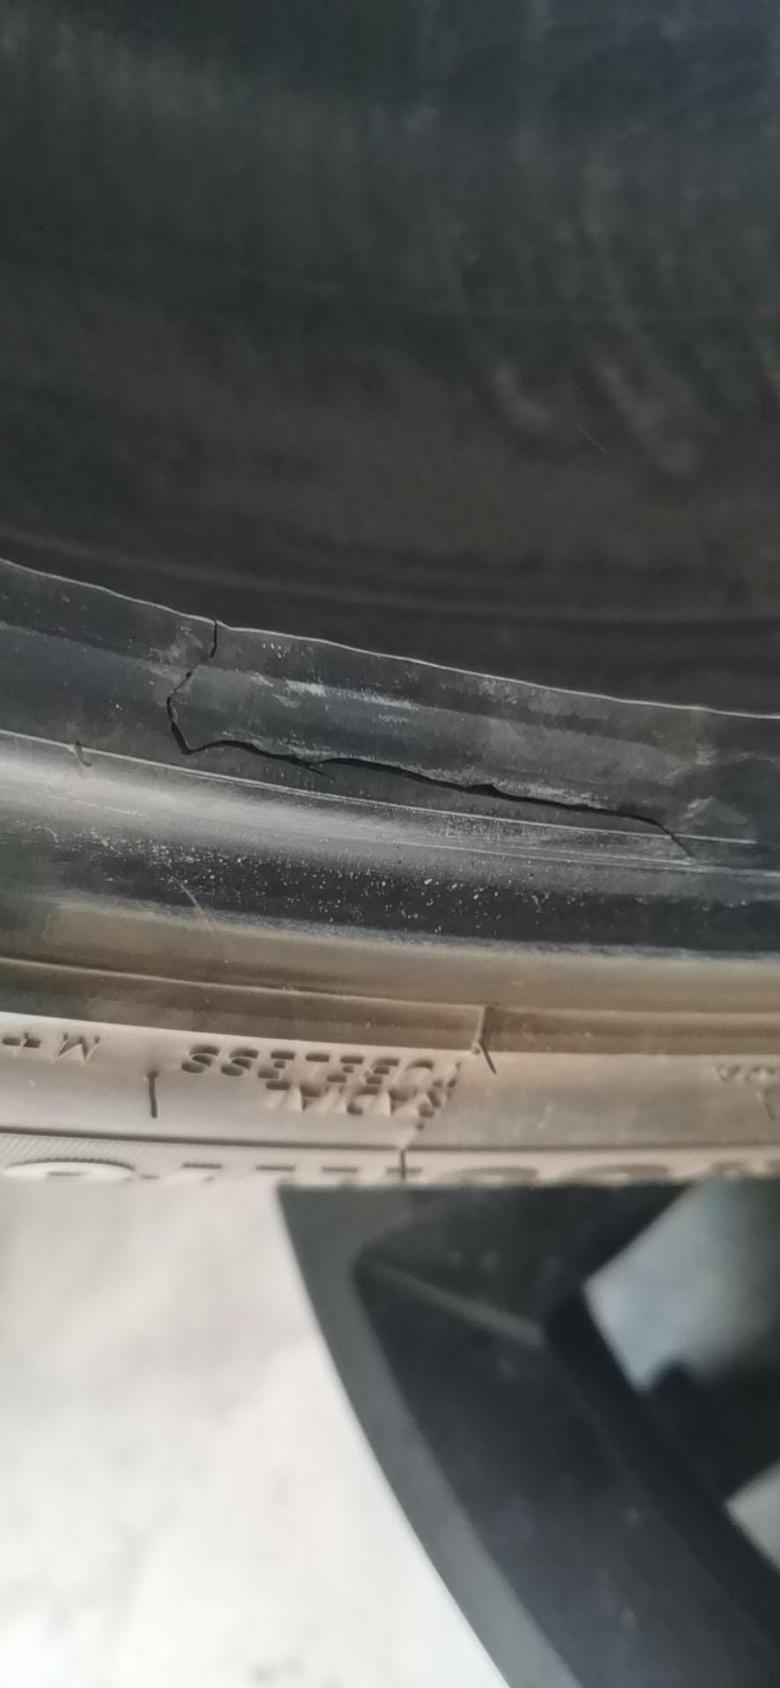 魏牌 vv7 刚提车不到一个小时轮胎过马路伢子爆胎了，换了一个新轮胎。上周扎钉子了，去补胎的时候发现轮胎内侧坏了。修理师说是之前换轮胎安装时候撕裂坏的，4s店说是我补胎时候撬棍撬坏的。我想问下大家这个到底是怎么坏的。提车不到一个月坏了两个轮胎，无语死了。